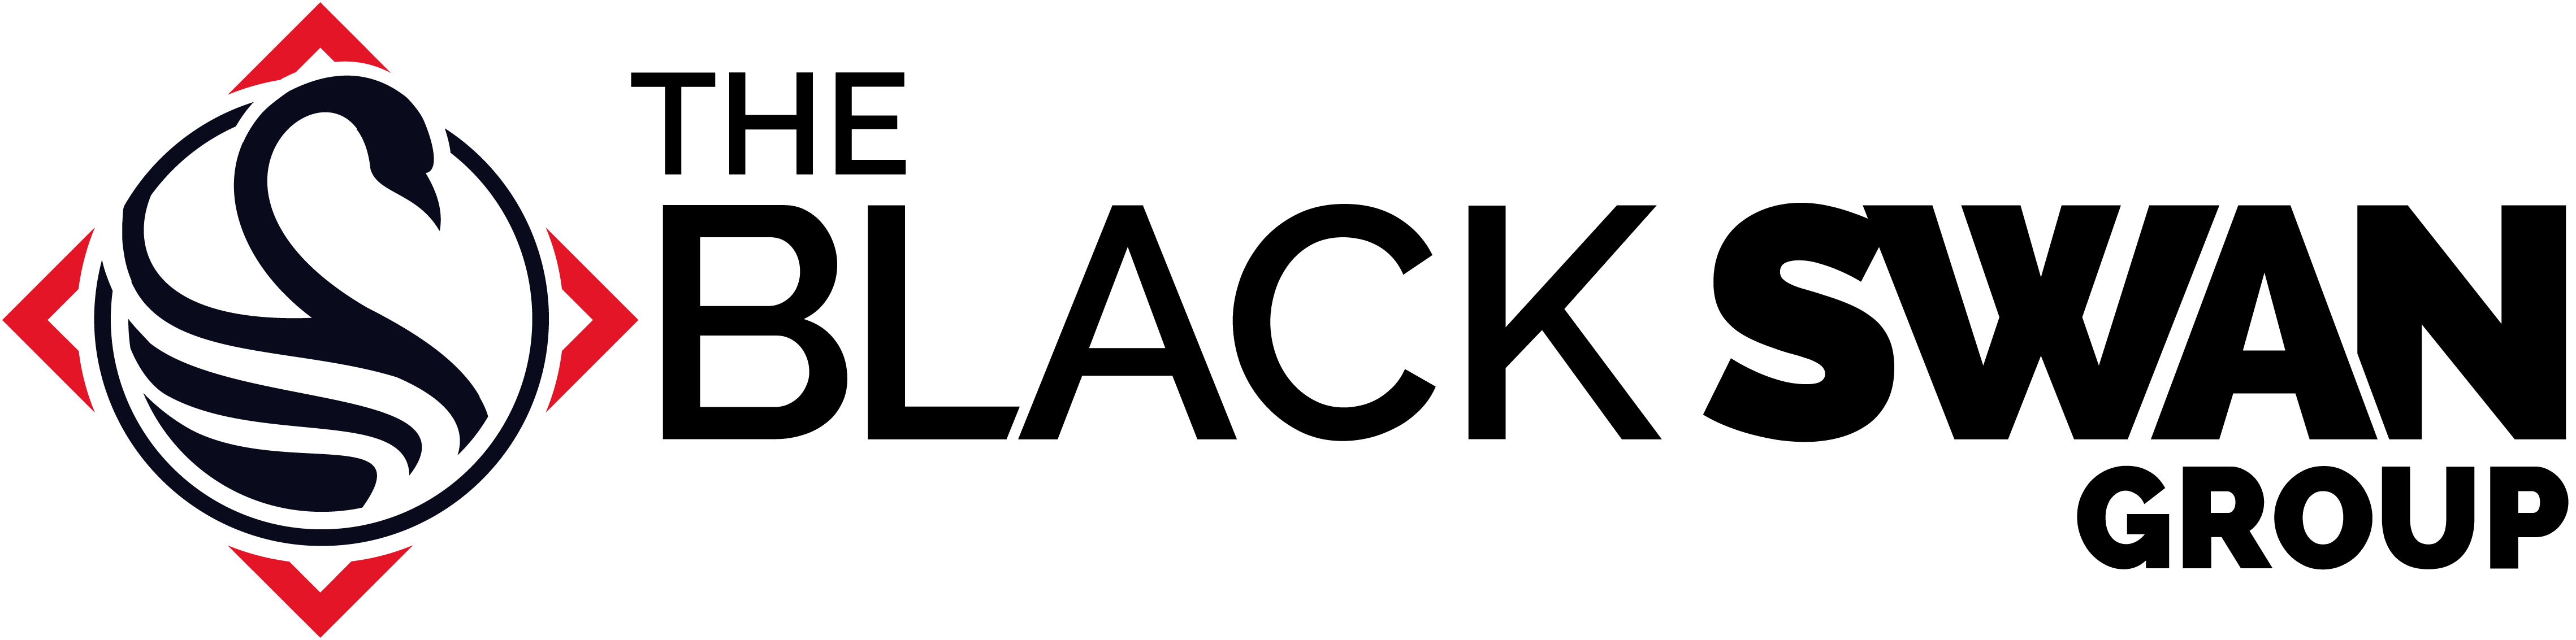 Black Swan Group logo